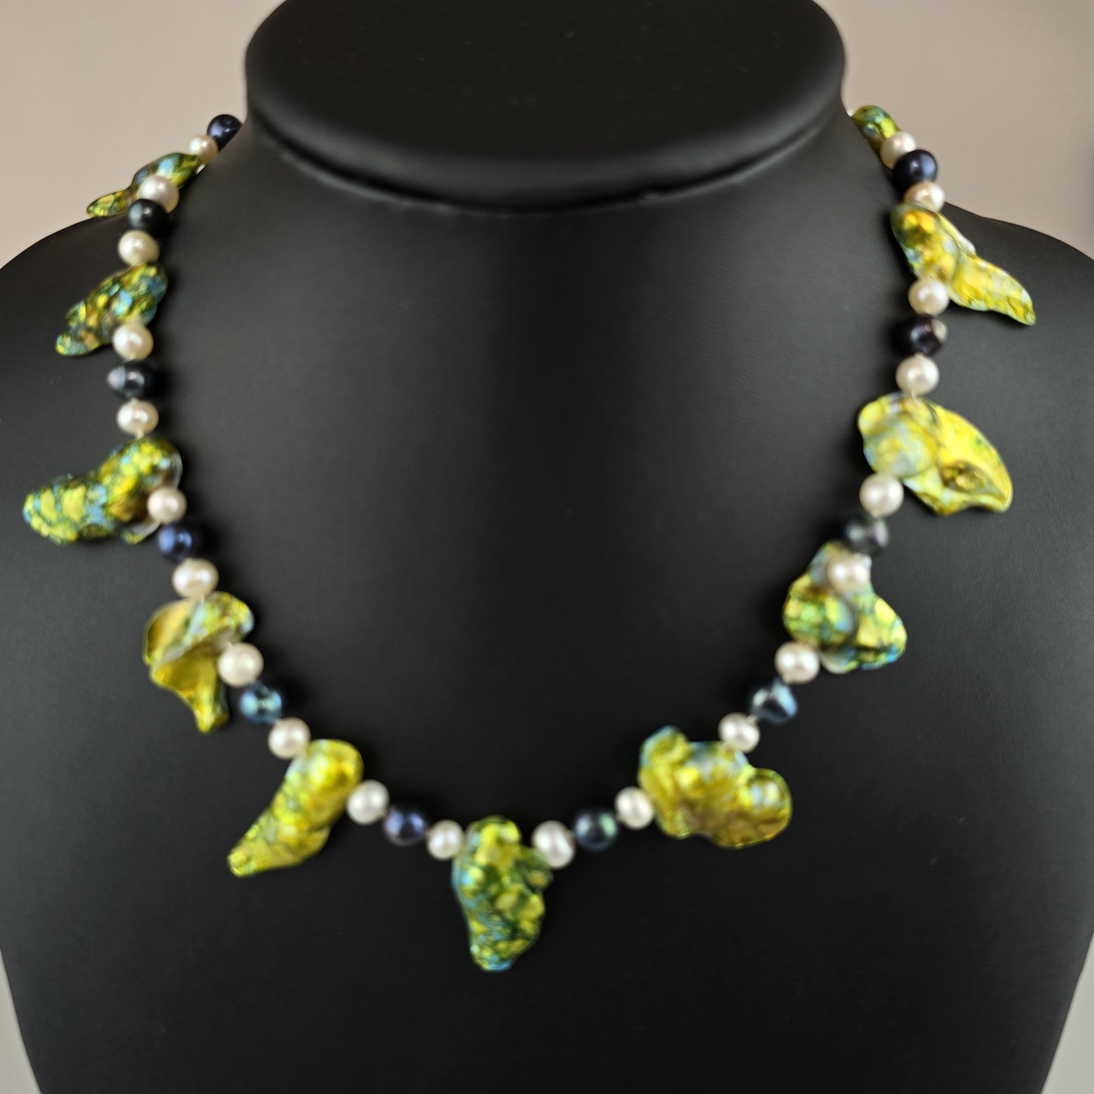 Extravagante Halskette - 14 unregelmäßig geformte naturgewachsene Perlmuttelemente, grün-gelb schil